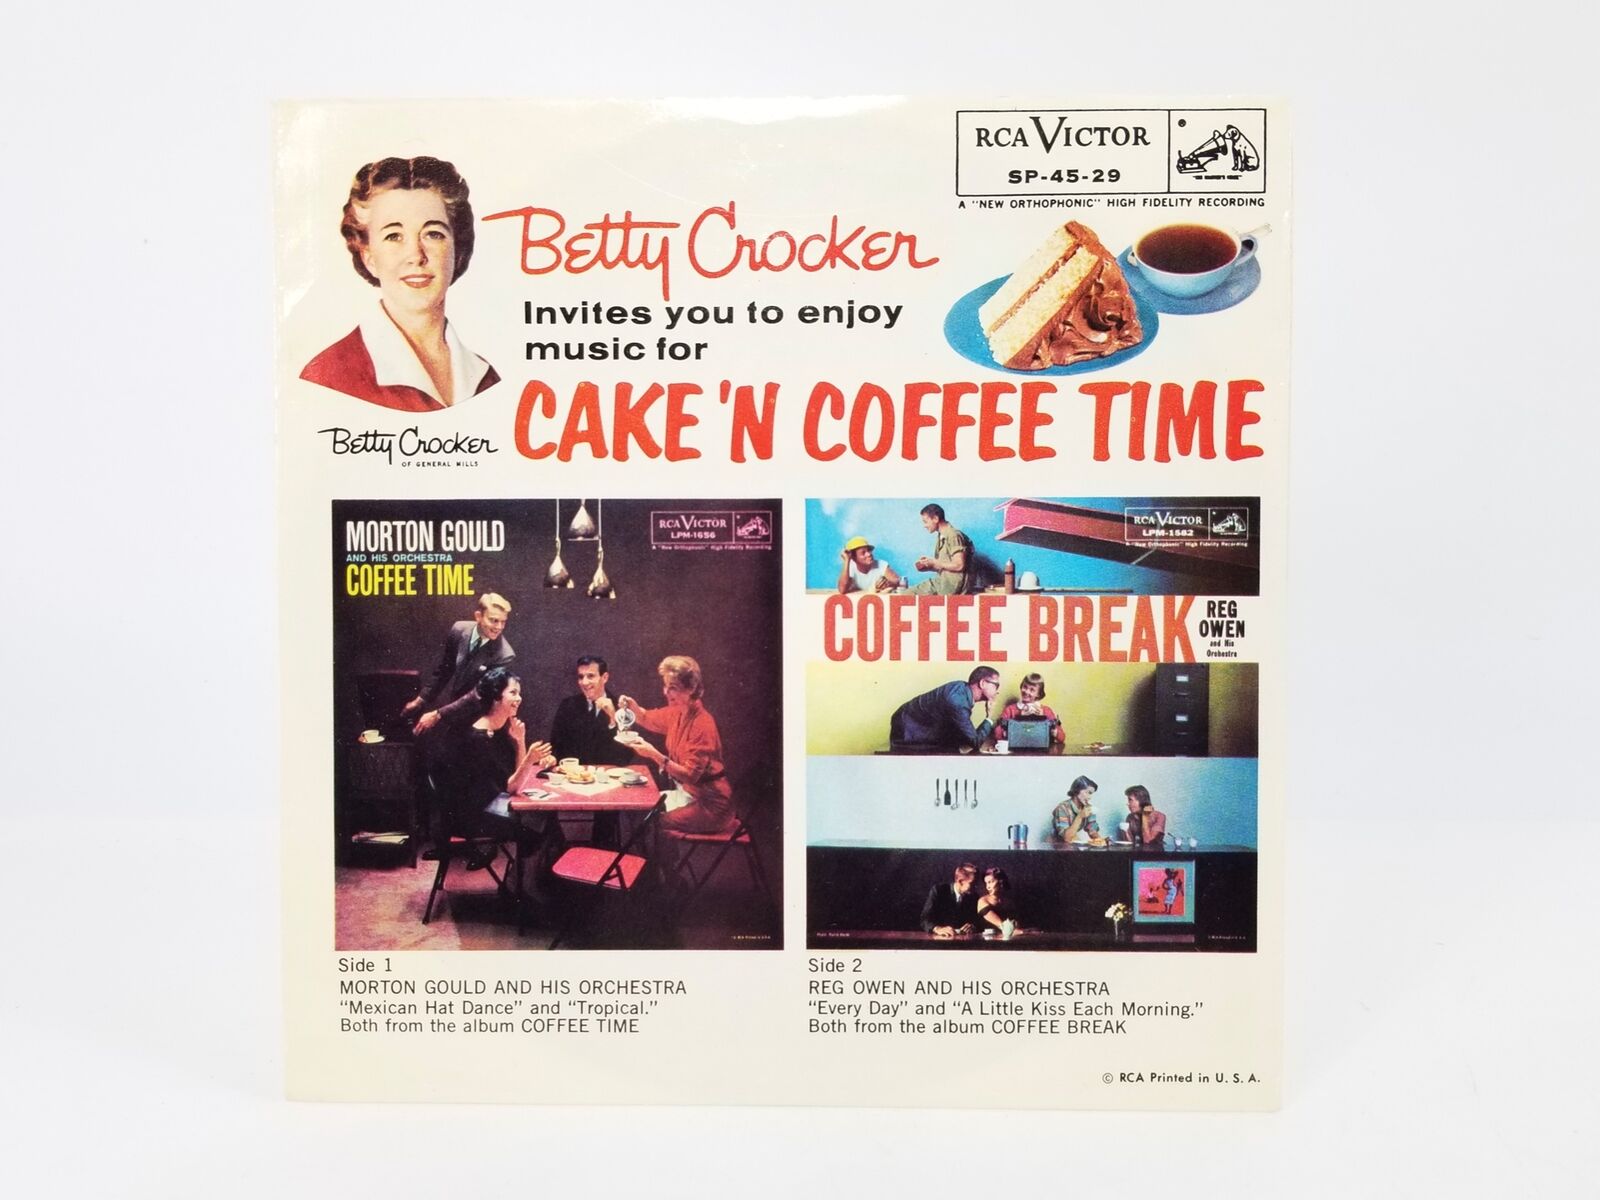 Betty Crocker Cake 'N Coffee Time Record, RCA SP-45-29 - Morton Gould, Reg Owen